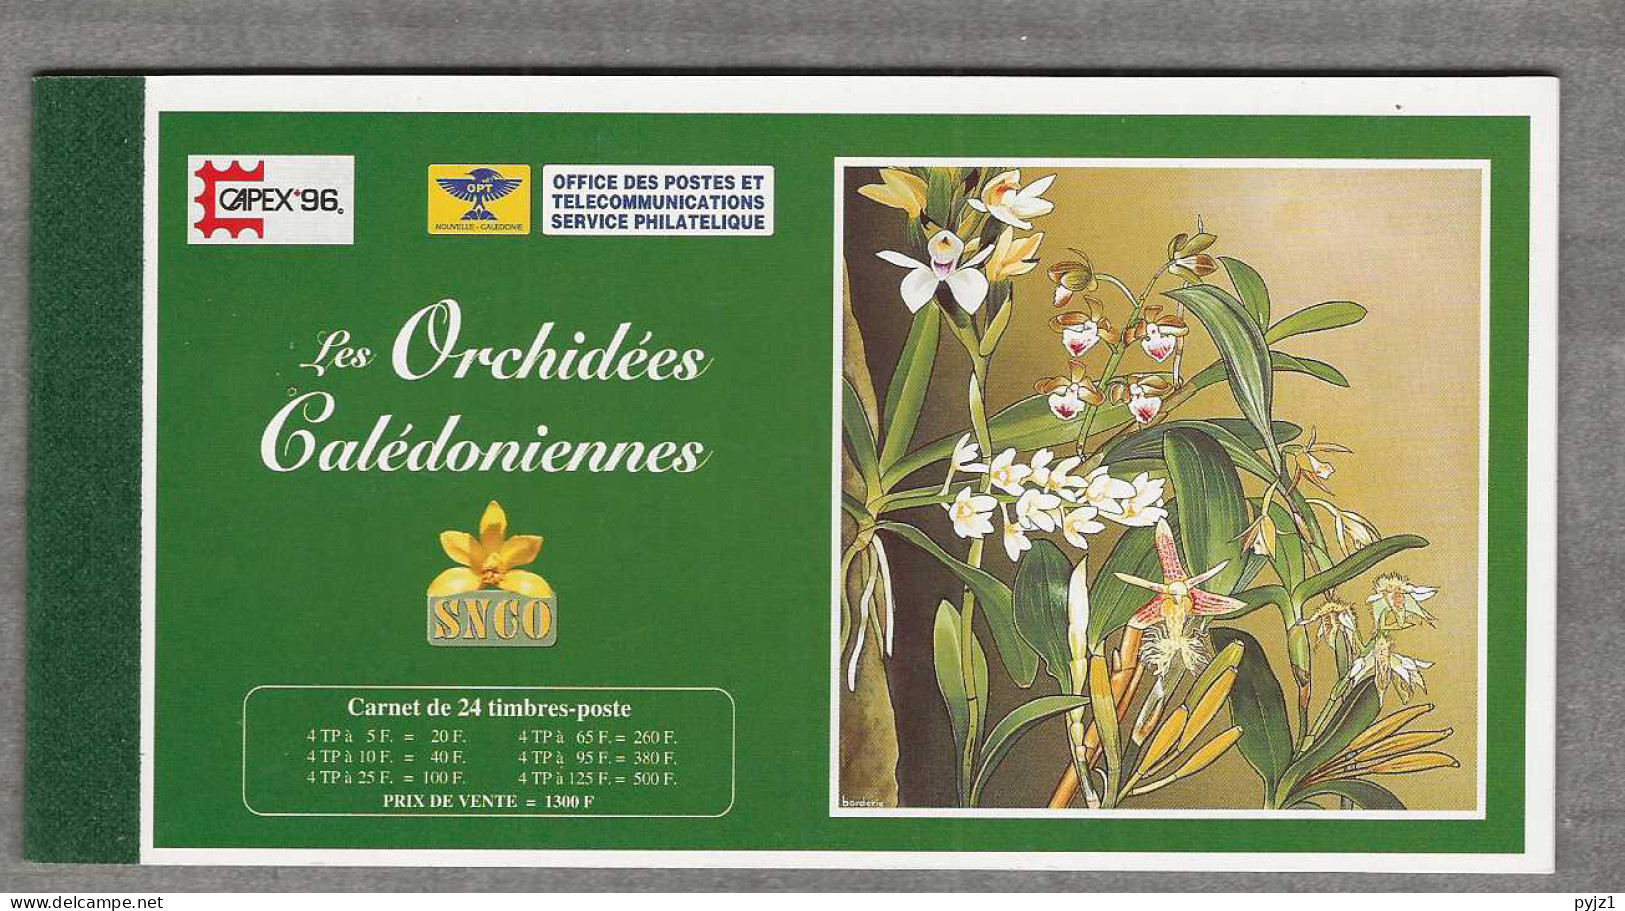 1996 MNH Nouvelle Caledonie Mi 1070-75 Booklet Postfris** - Postzegelboekjes